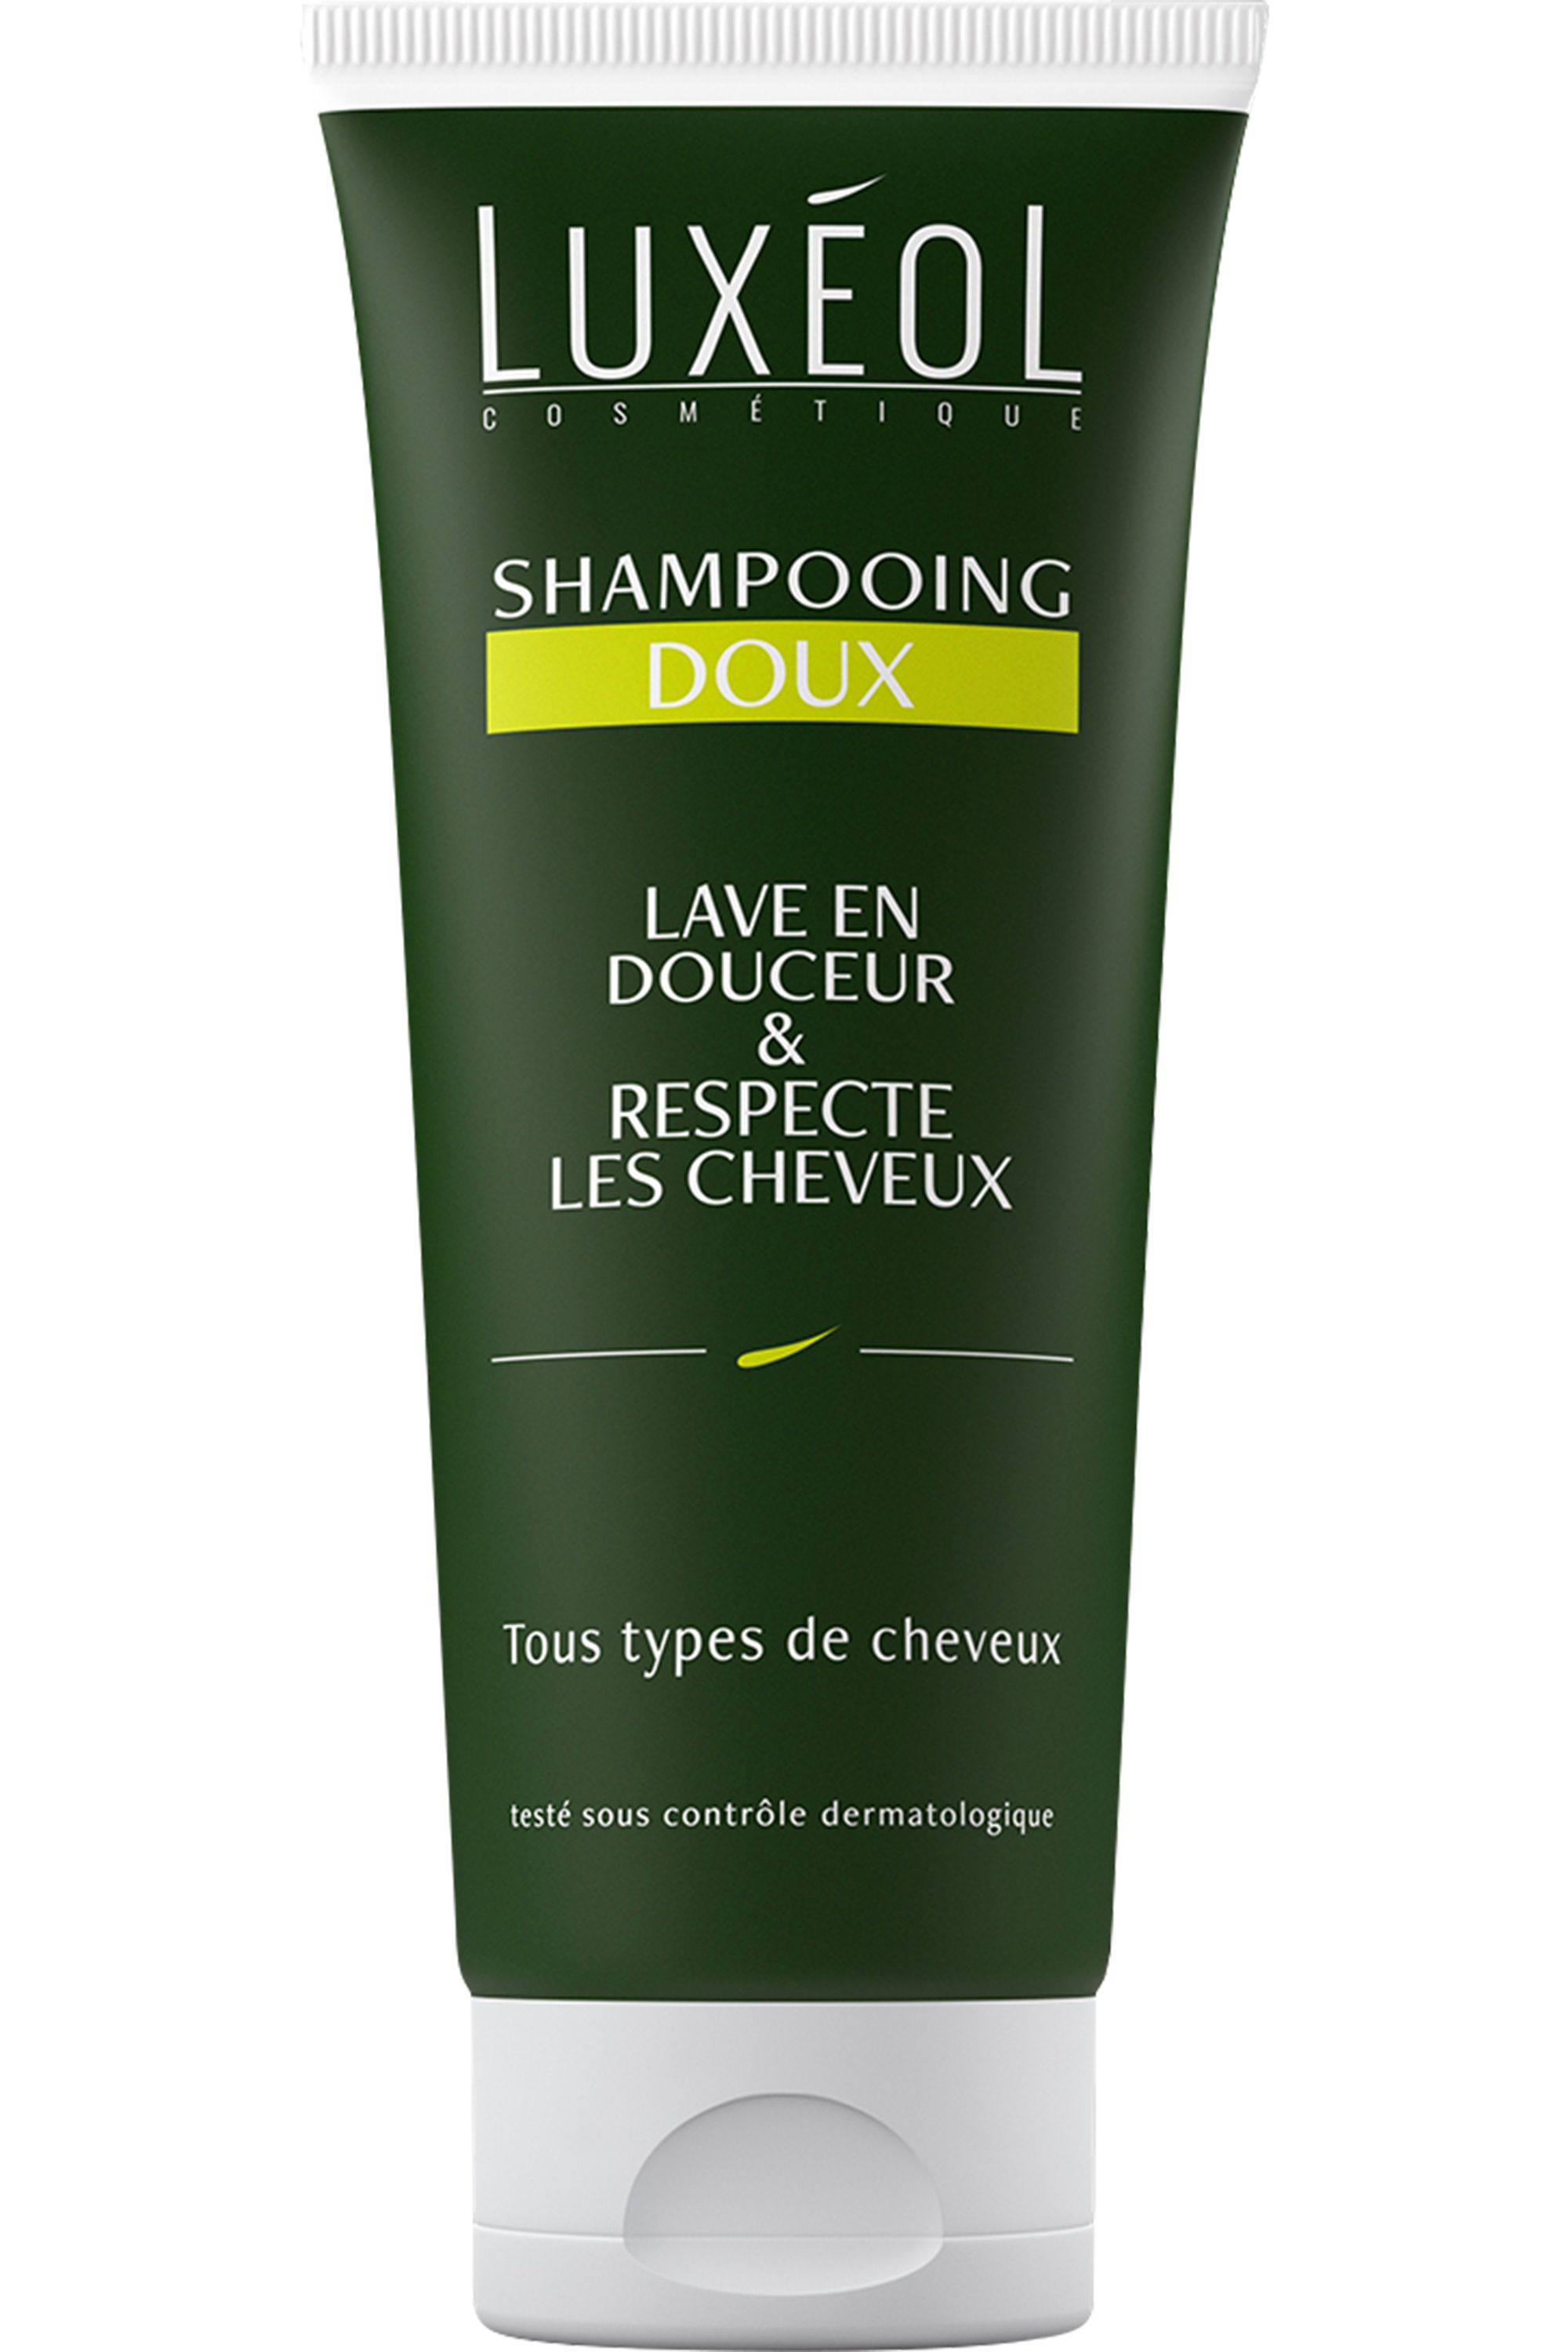 https://blissim.fr/wp-content/uploads/2021/05/luxeol-shampooing-doux-3760007335099.jpg